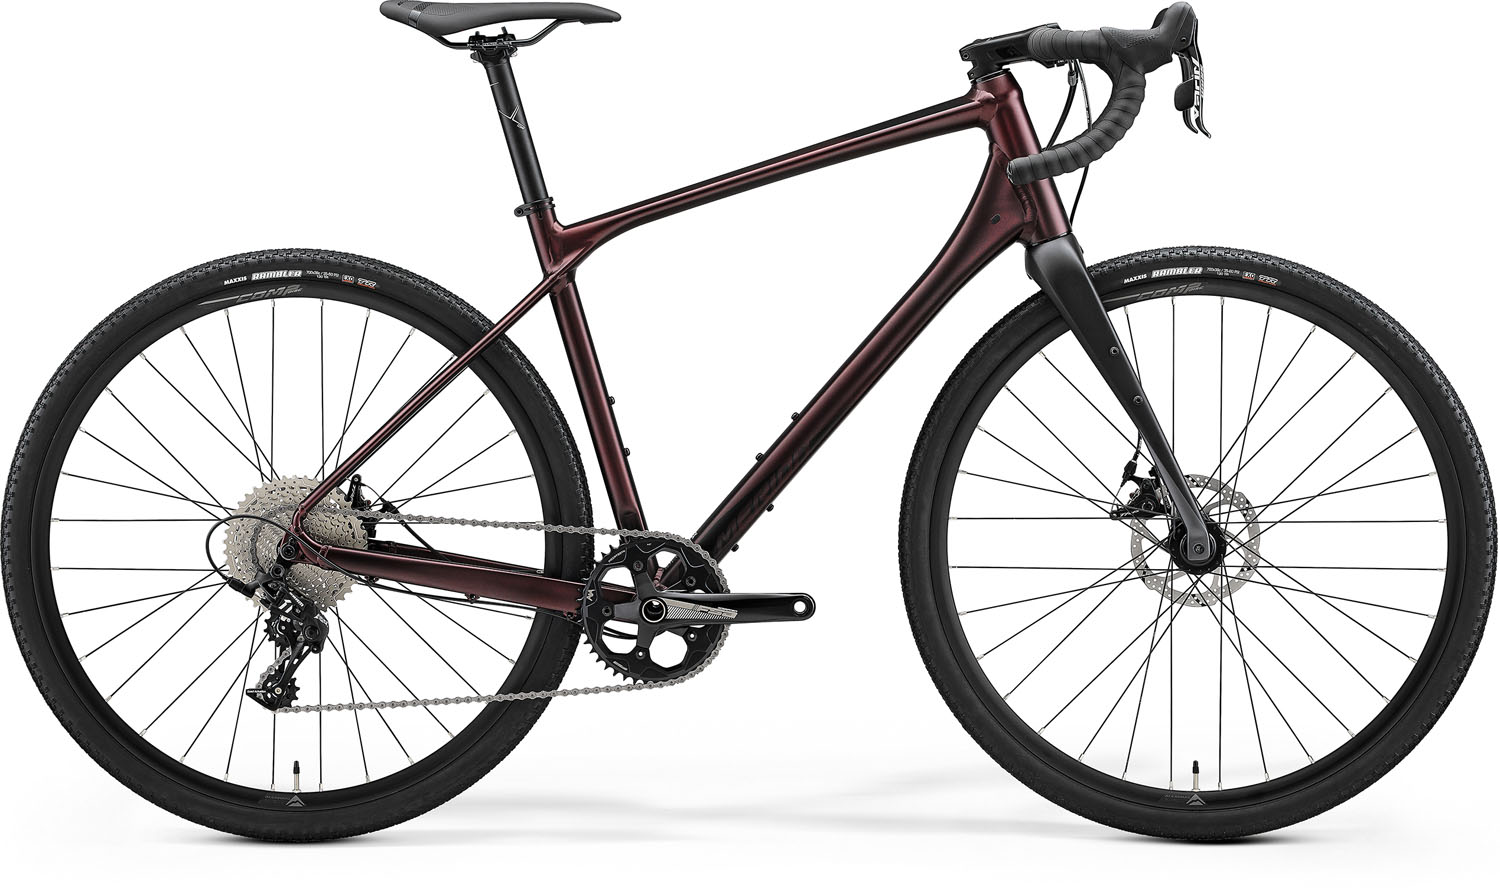 Bicicleta Gravel Unisex Merida Silex 300 Mov inchis/Negru 22/23